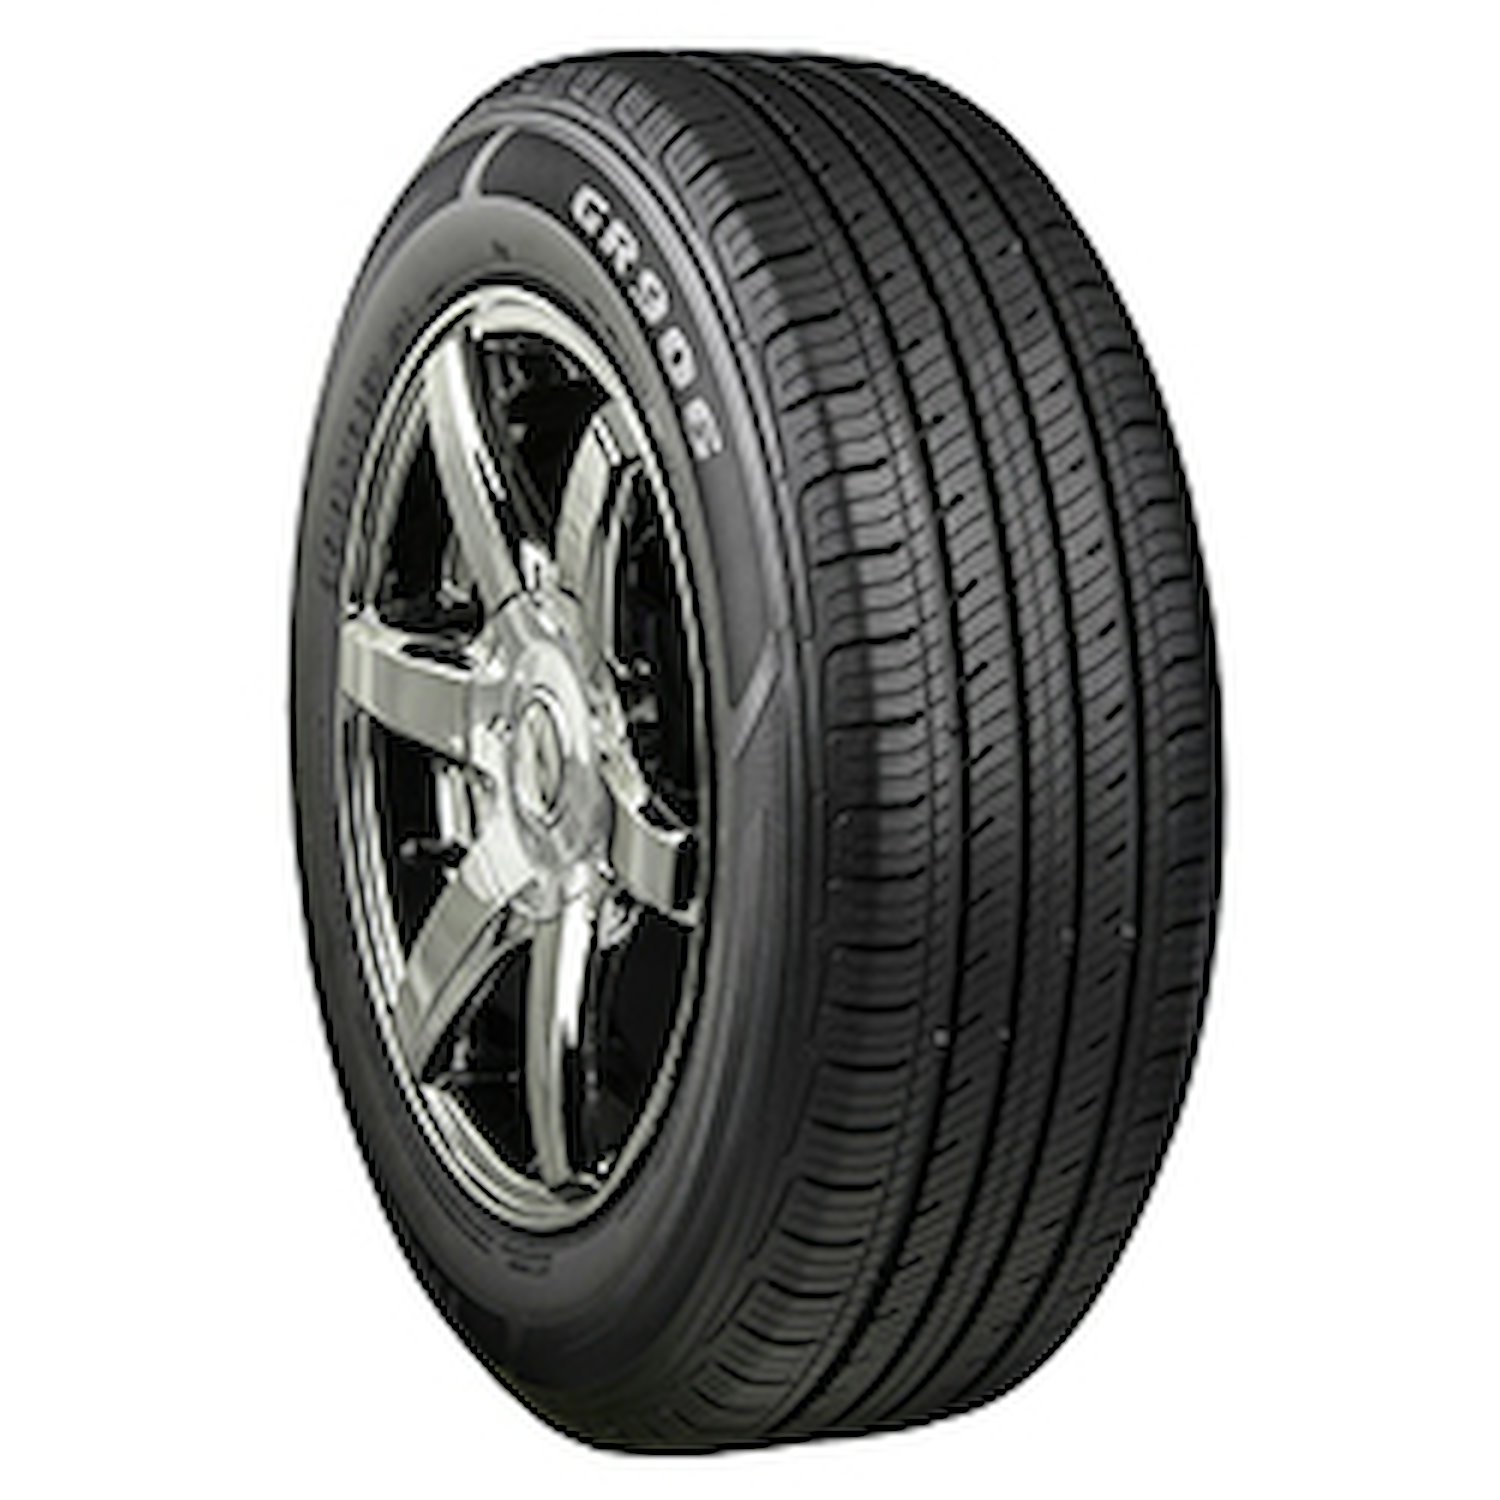 GR906 Tire, 195/60R14 86H